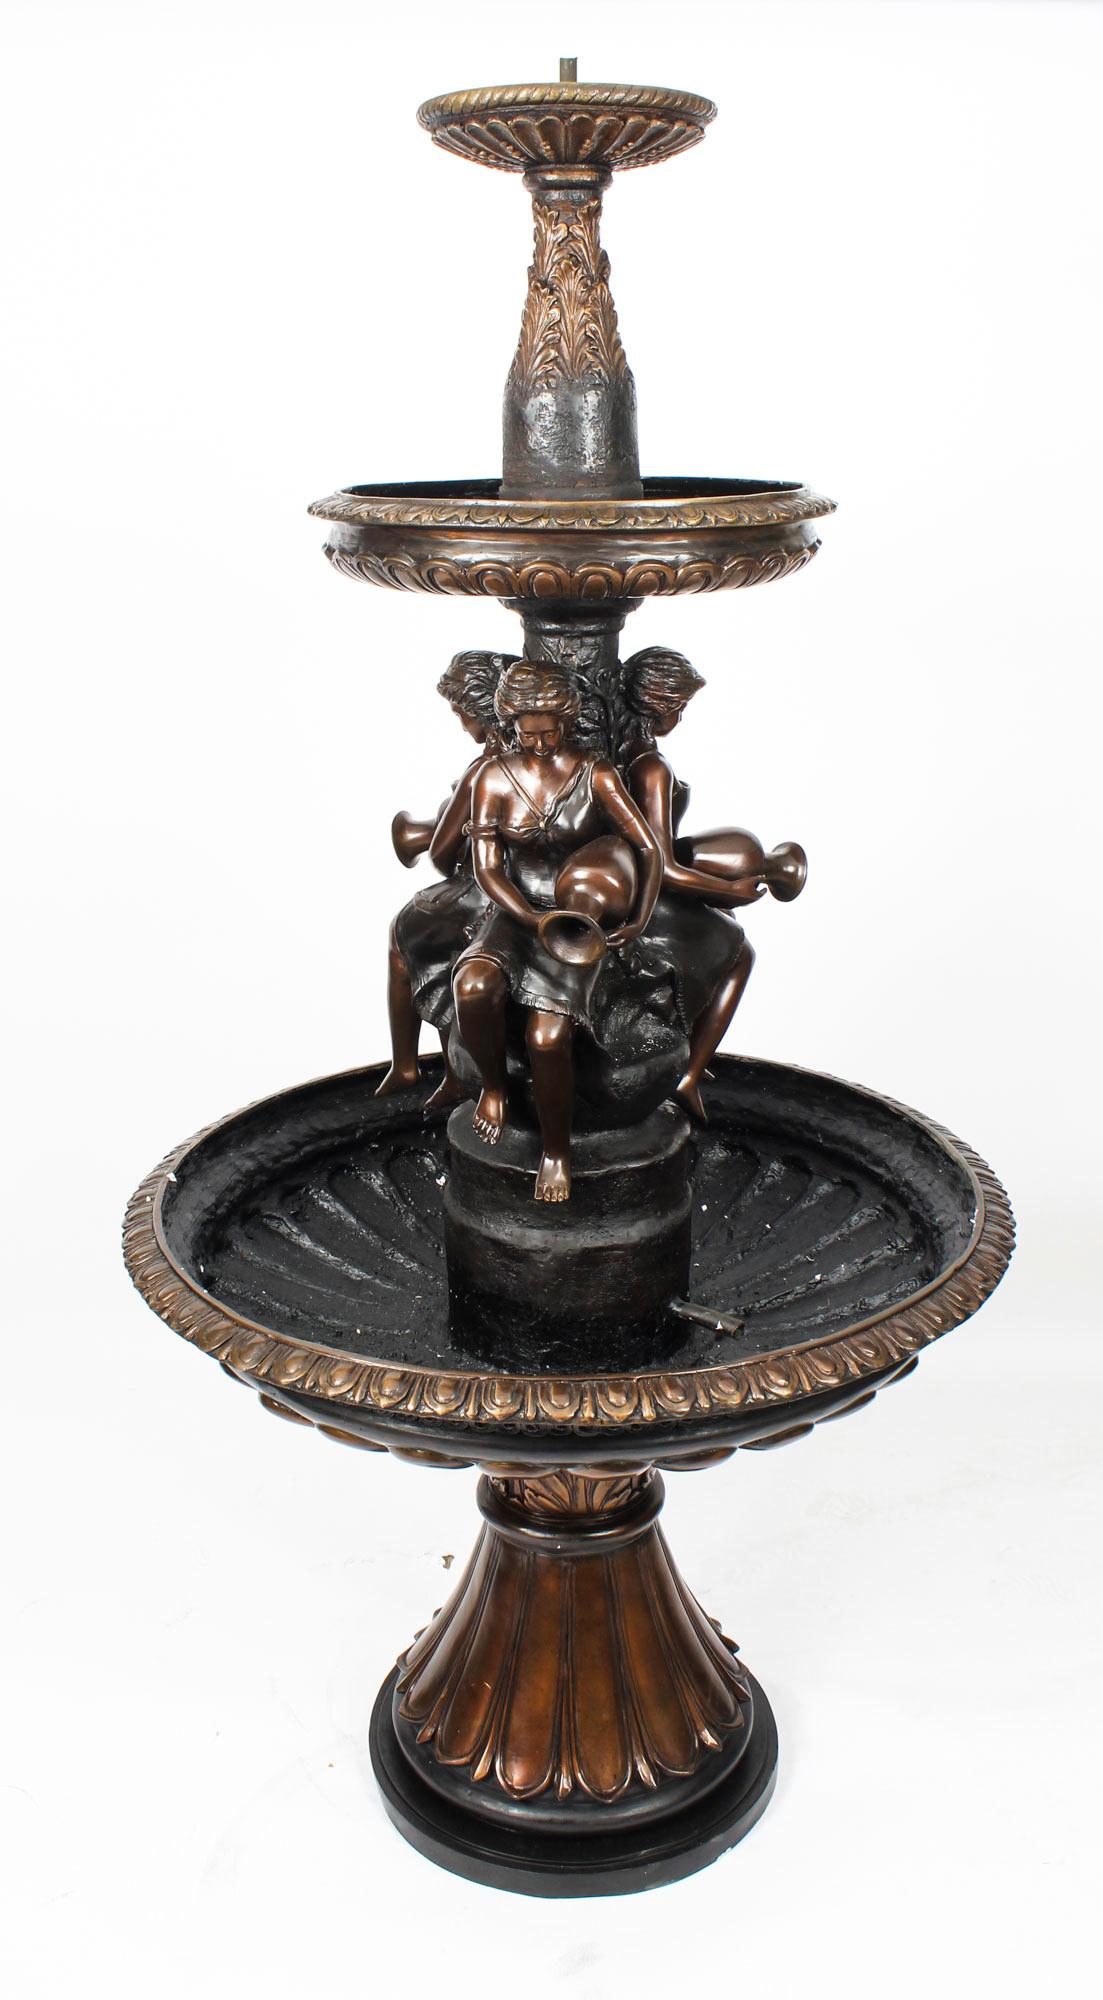 Dies ist ein wunderschöner dreistufiger, freistehender oder Teich-Gartenbrunnen aus Bronze im viktorianischen Stil aus dem späten 20.
 
Der Brunnen ist reich verziert mit Akanthusblättern, Anthemion und Kanneluren in Hochrelief.

Das Wasser